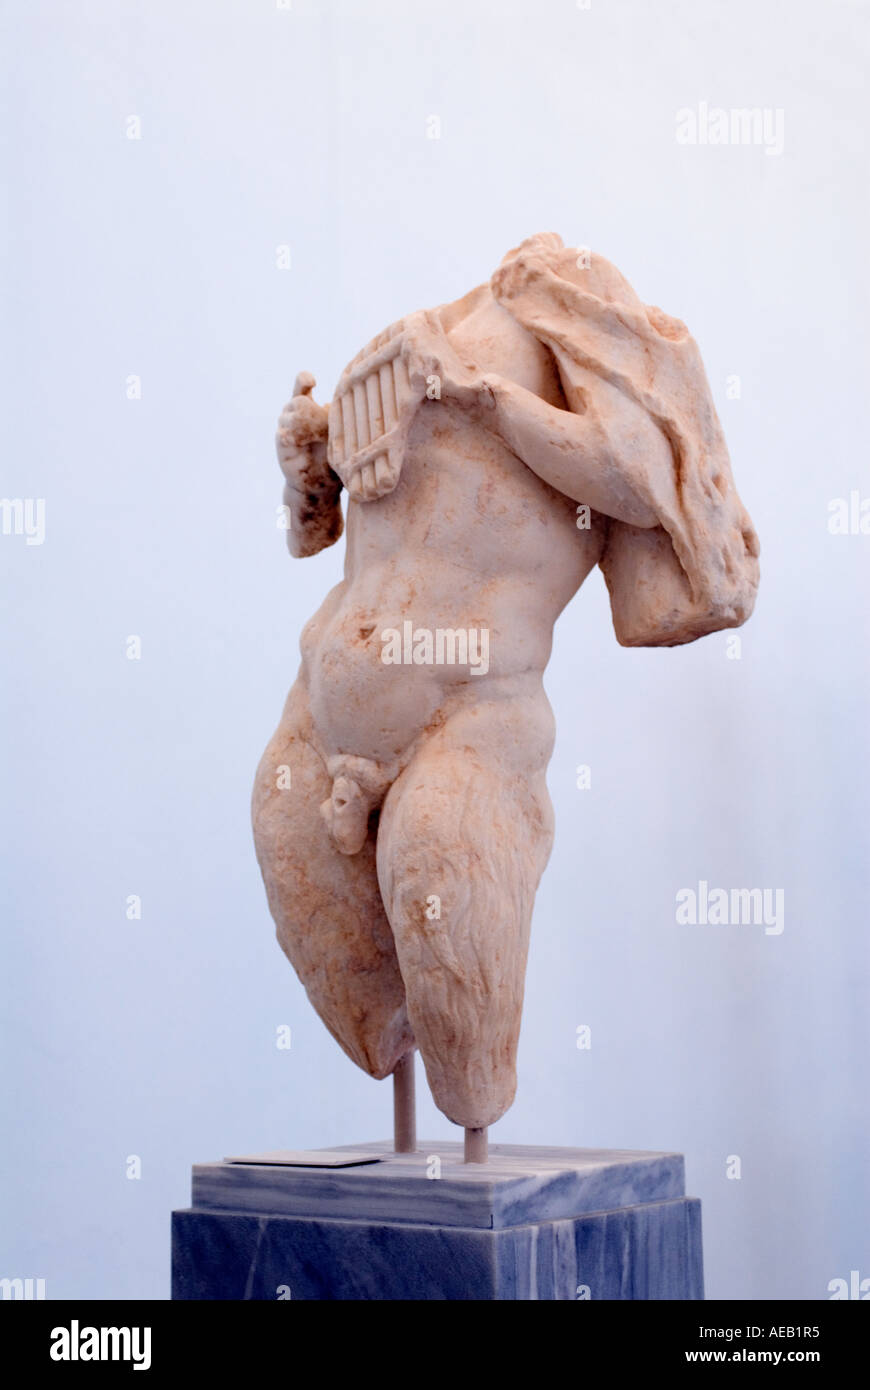 Insel Delos, Griechenland archäologisches Museum Statue eines Marmor Körpers auf einem Steinsockel Stockfoto